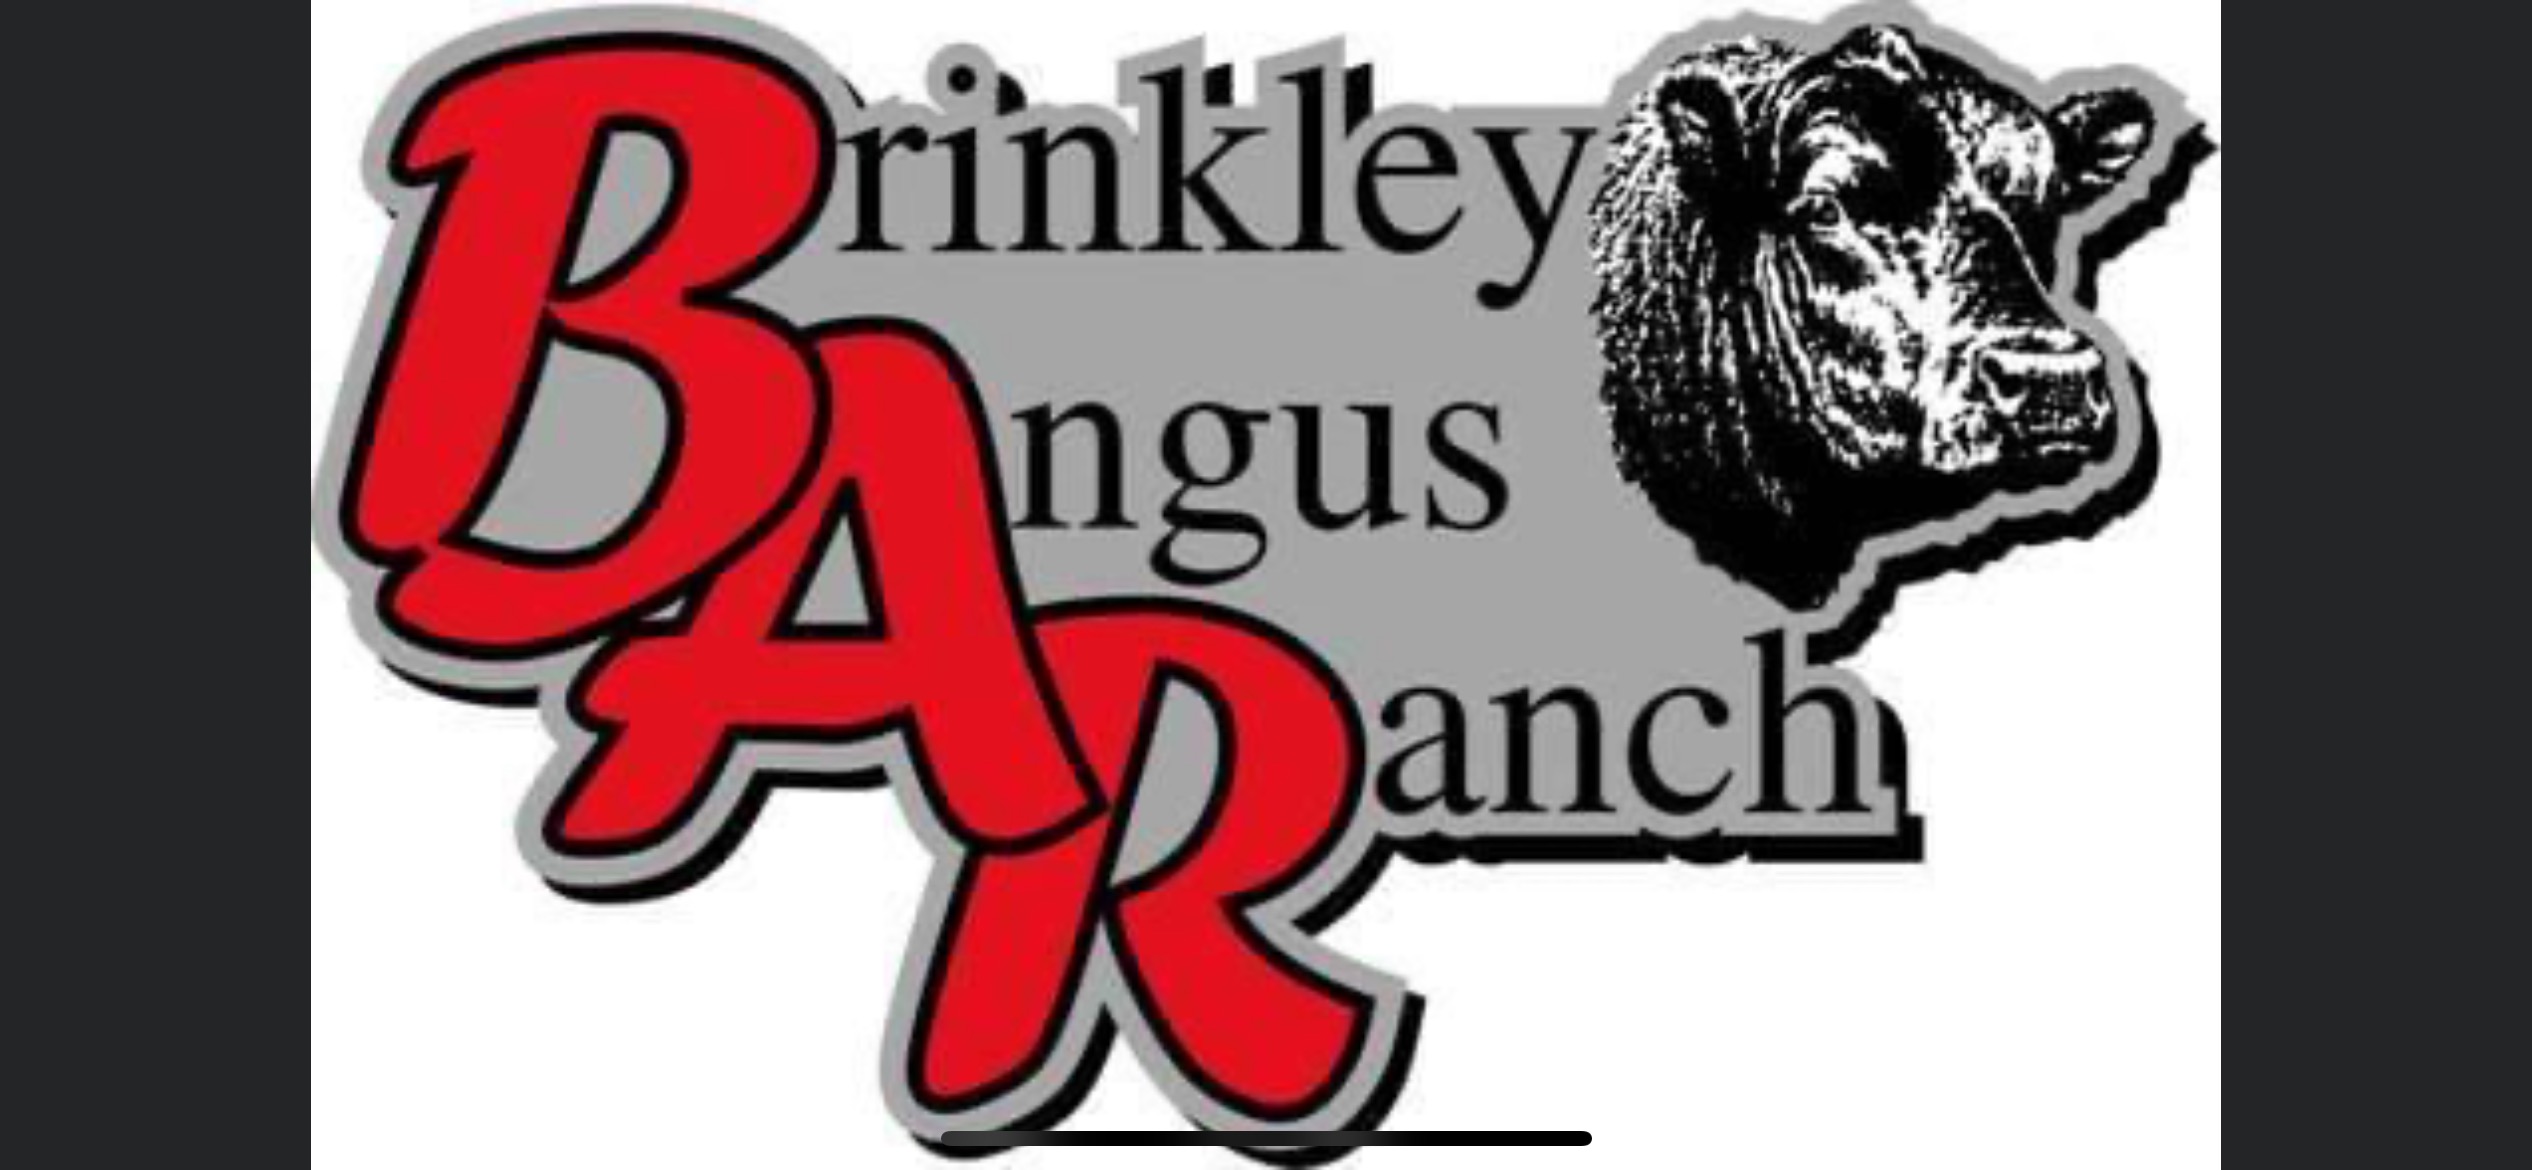 Brinkley Angus Ranch